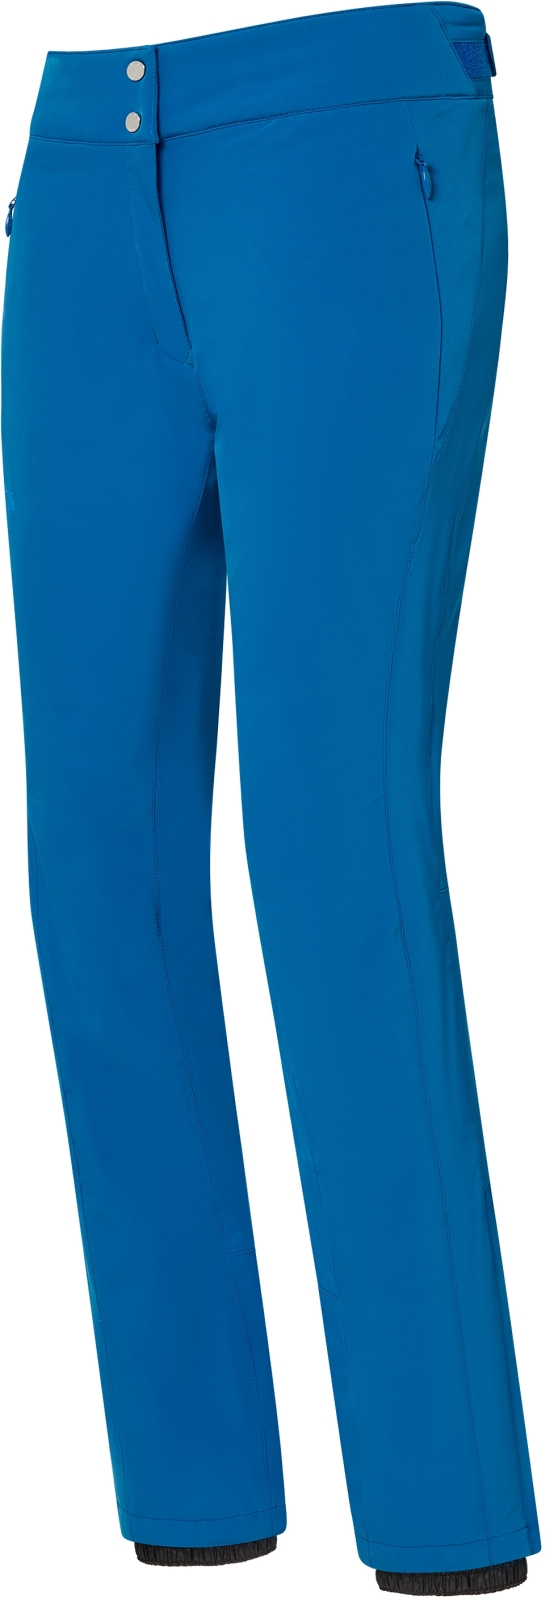 Levně Descente Dámské lyžařské kalhoty Giselle Insulated Pants - Lapis Blue L